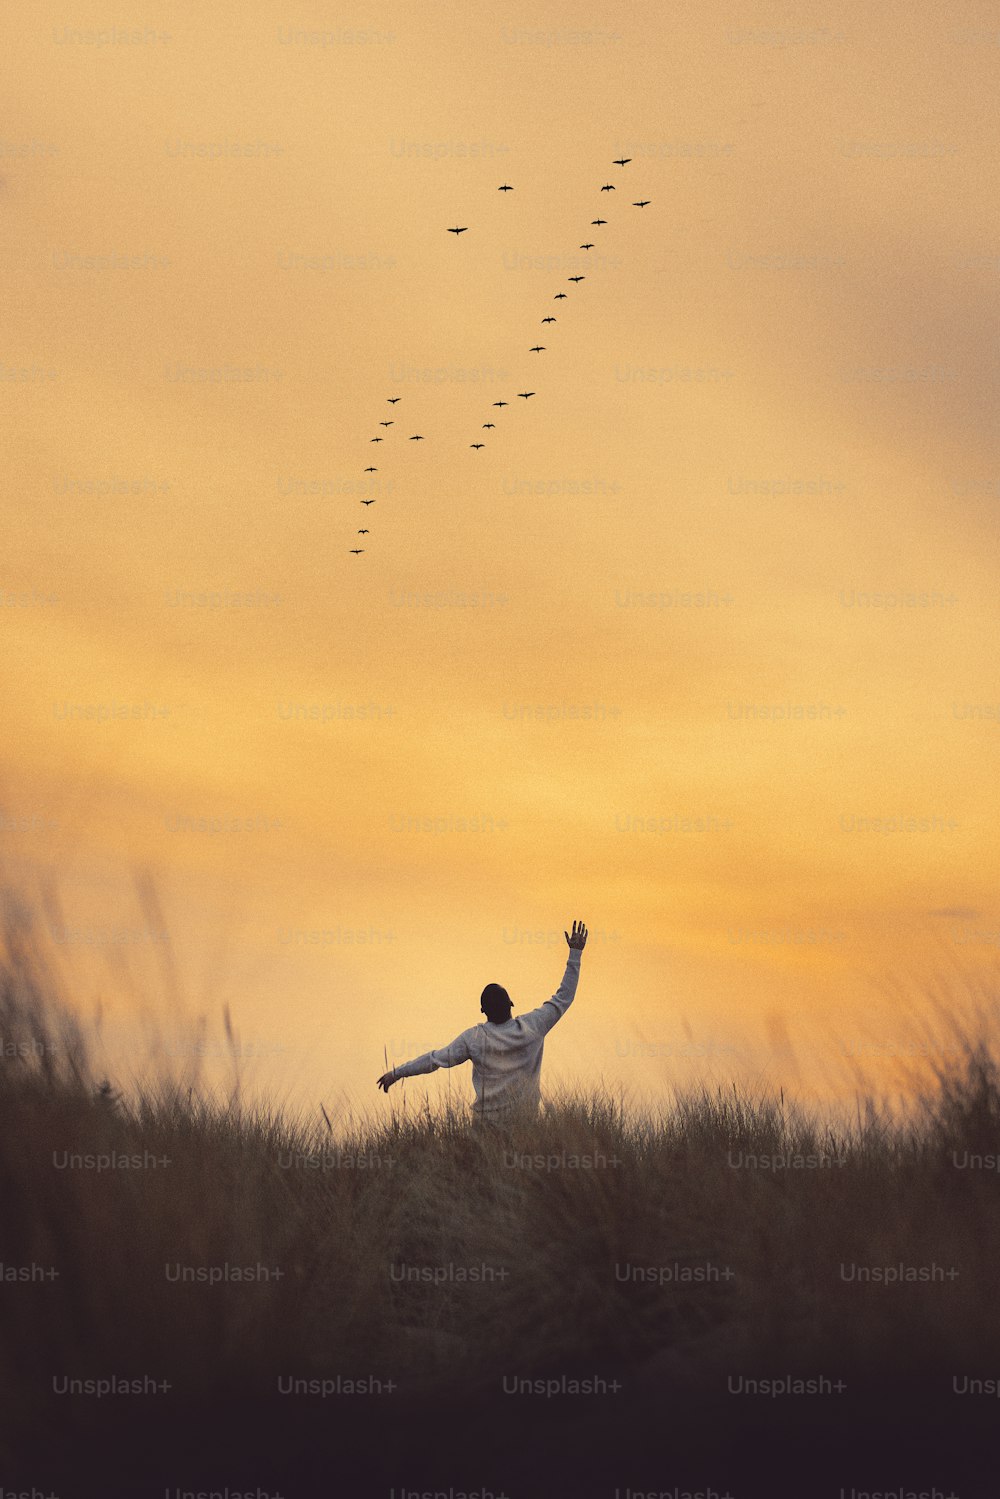 un homme debout dans un champ en train de faire voler un cerf-volant